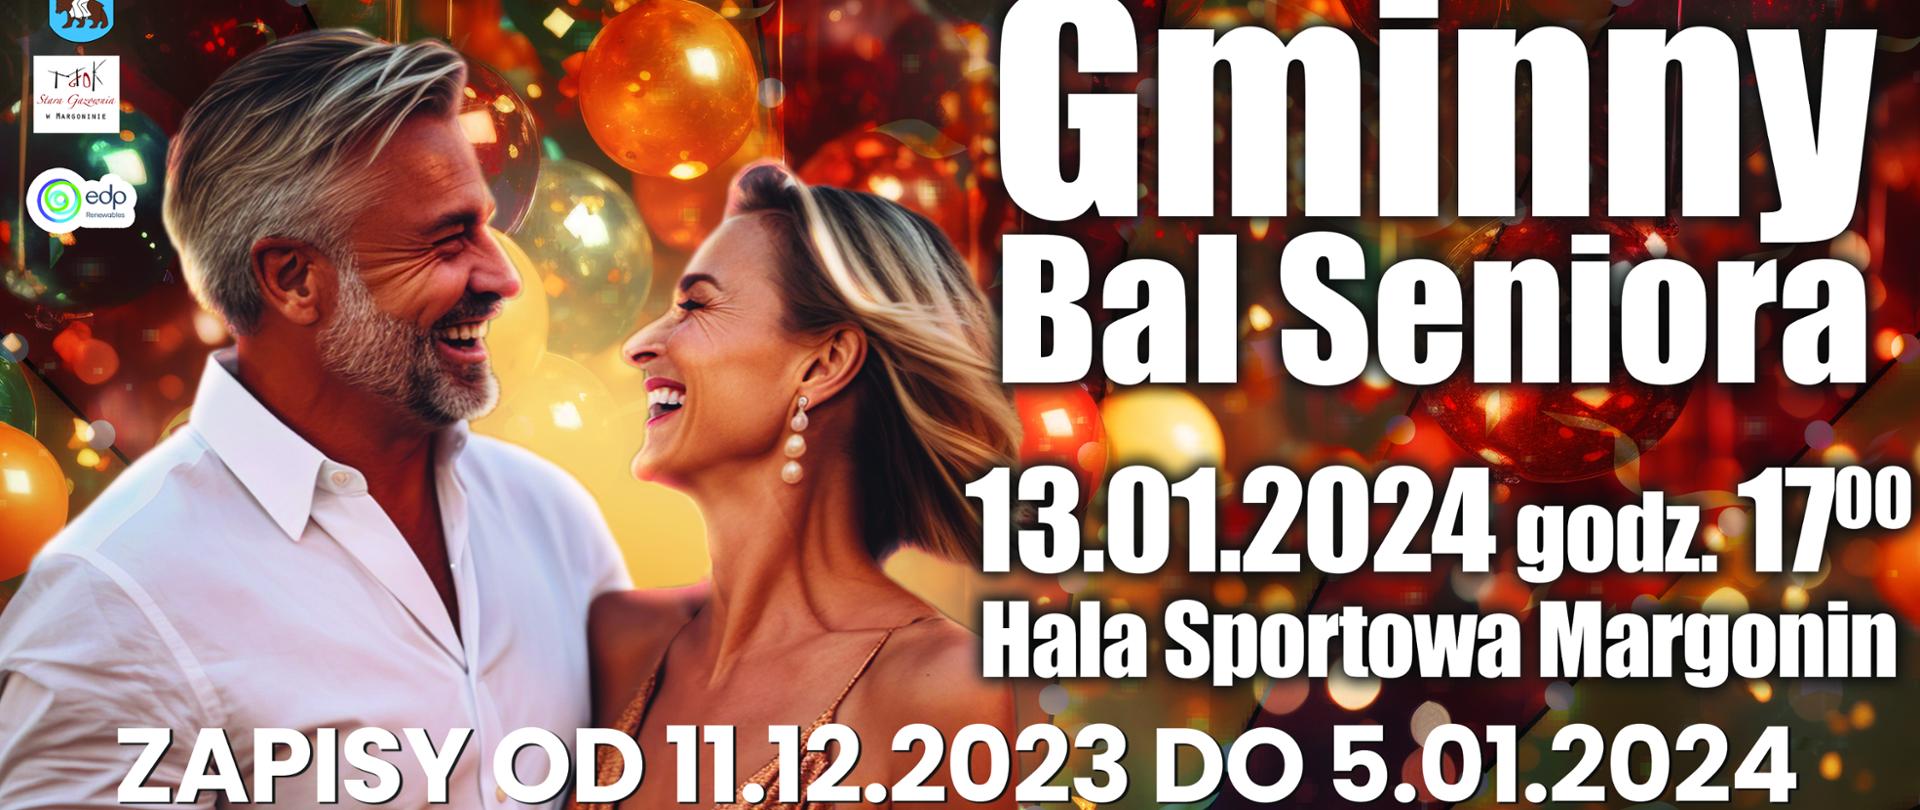 Plakat Gminny Bal Seniora, 13.01.2024 godzina 17:00, hala sportowa Margonin. Zapisy od 11.12.2023 do 5.01.2024 w MGOK Margonin.